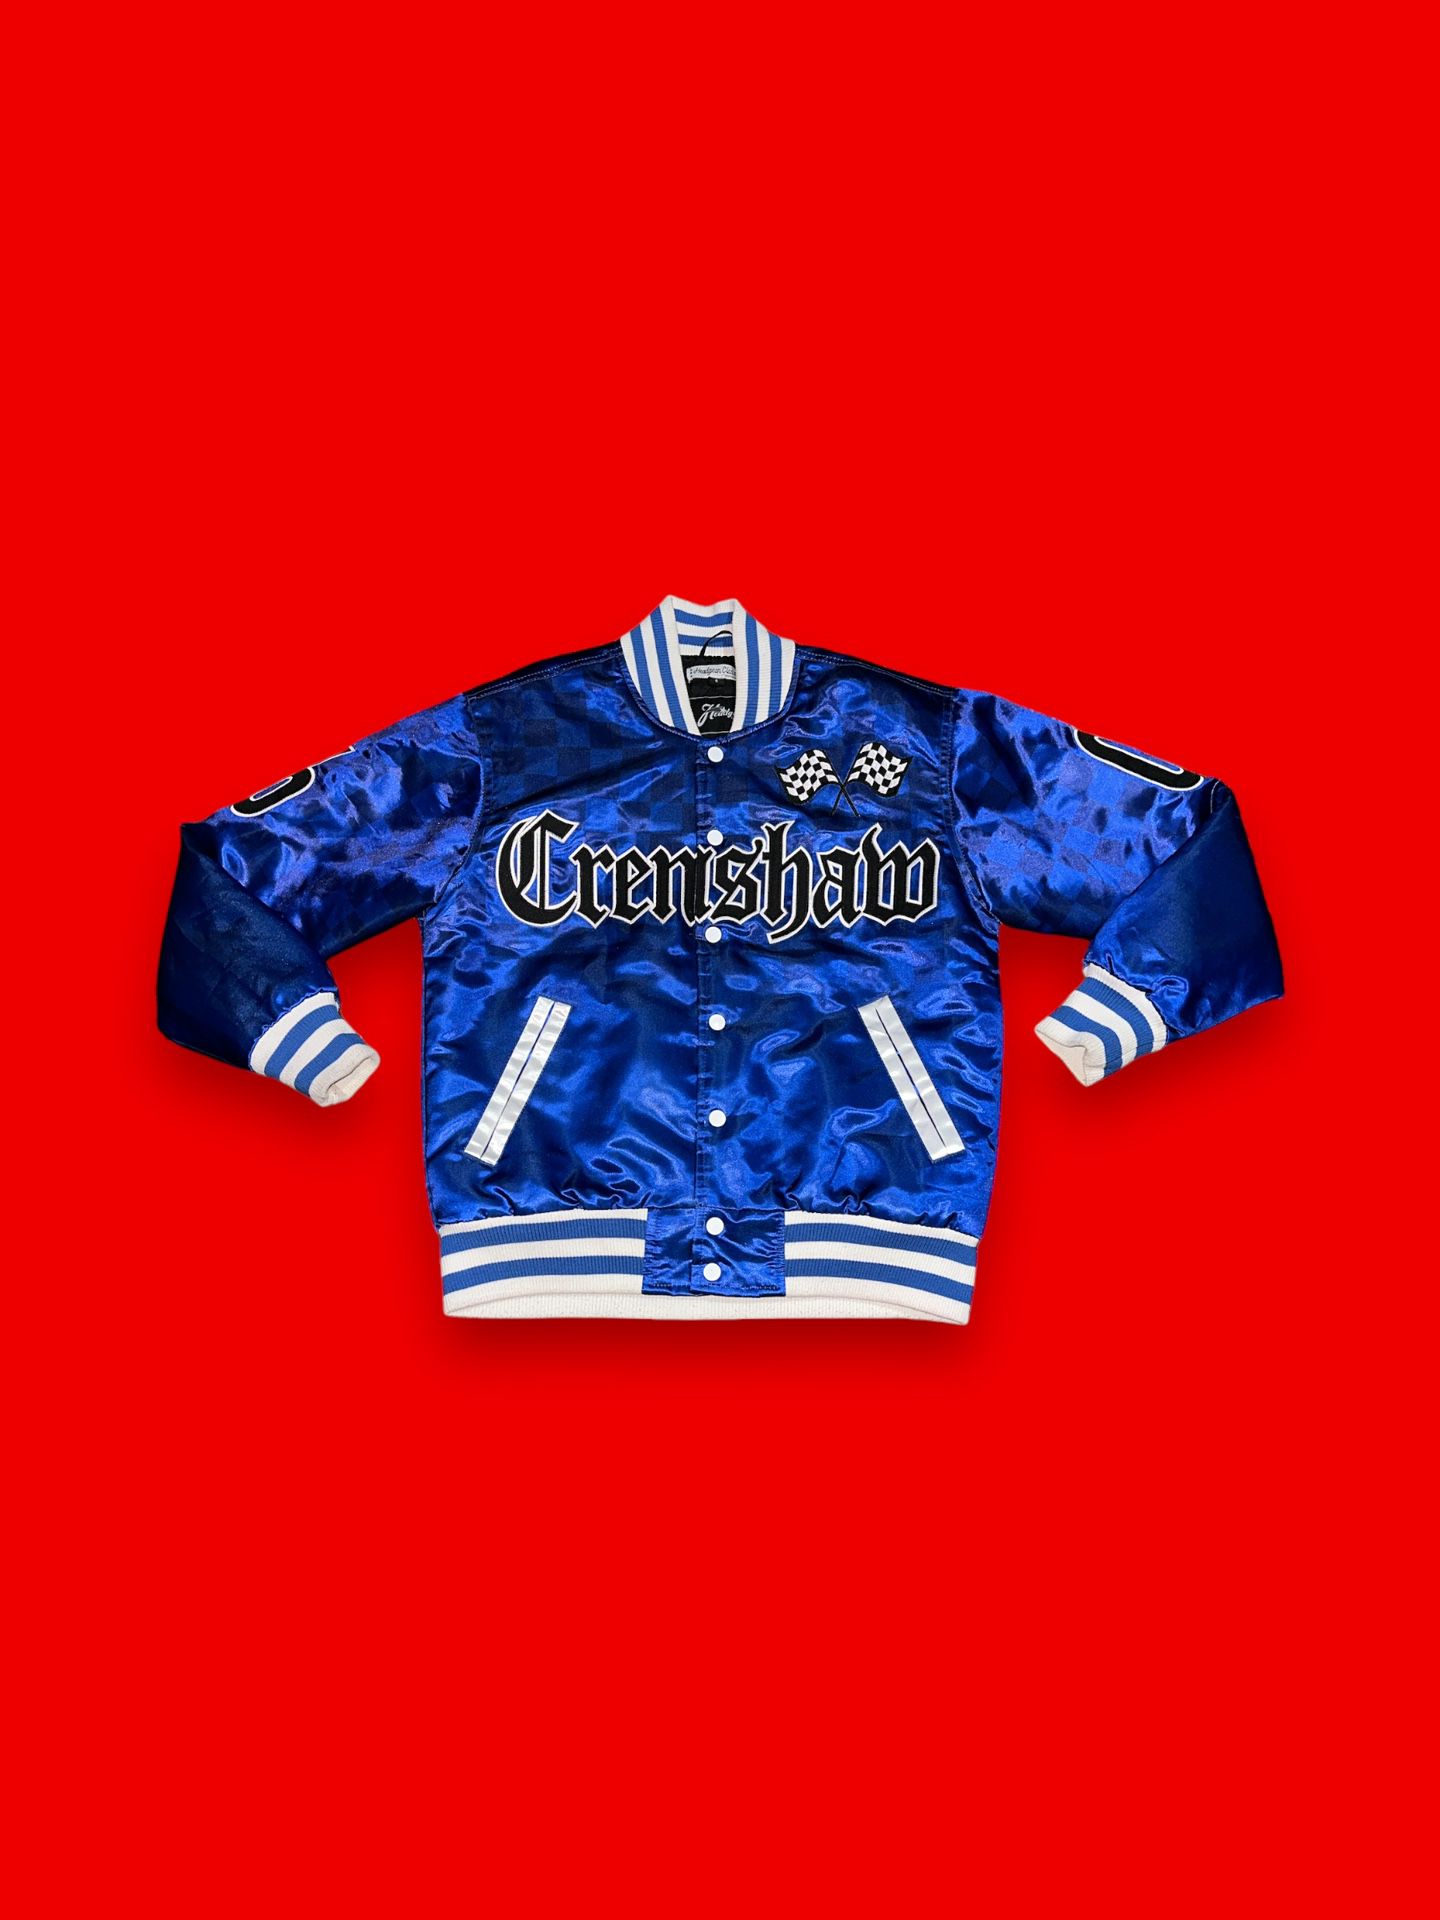 Crenshaw Nipsey Hussle marathon bomber jacket 